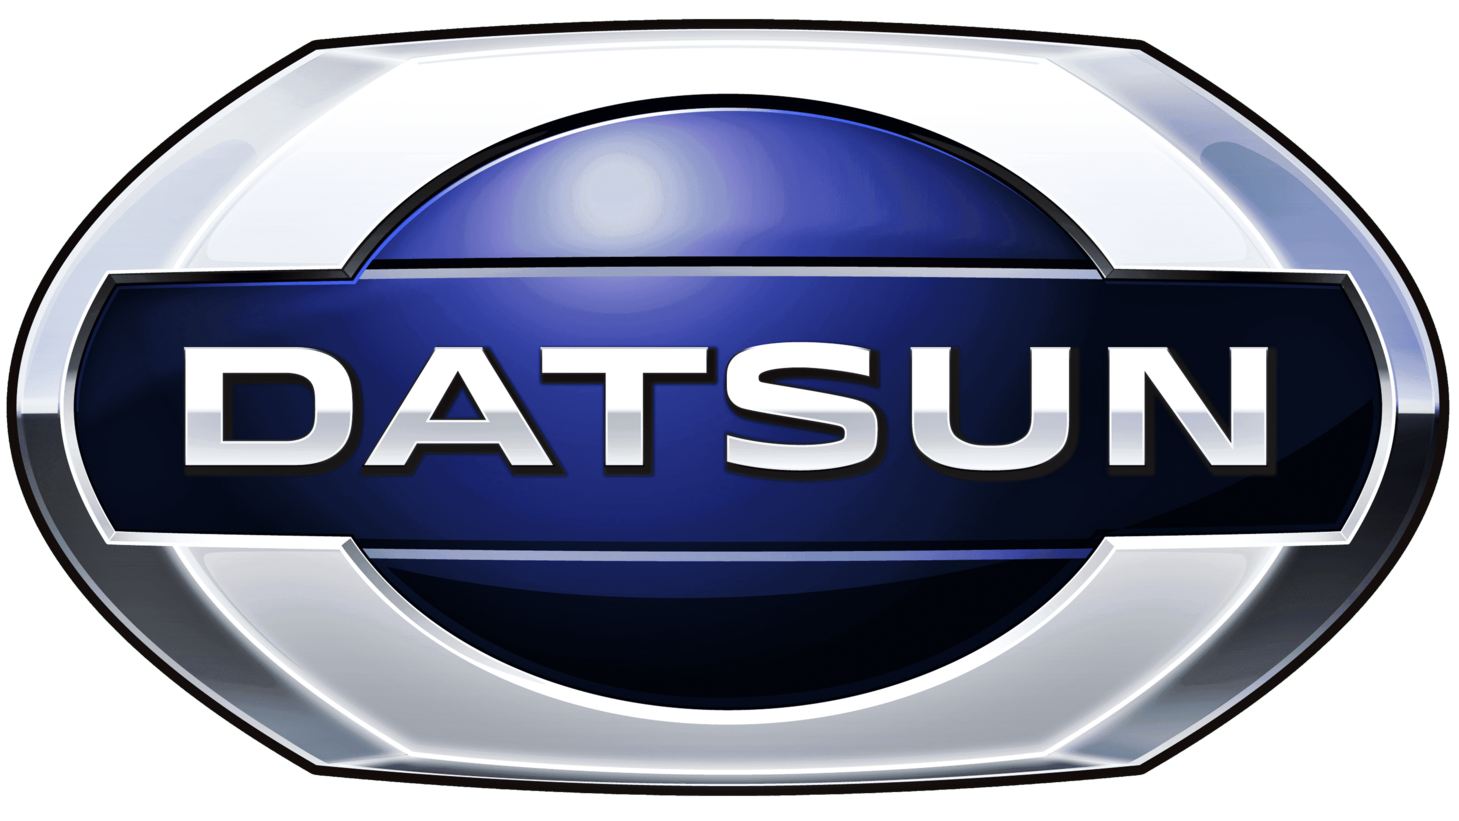 Datsun sign 2013 2020